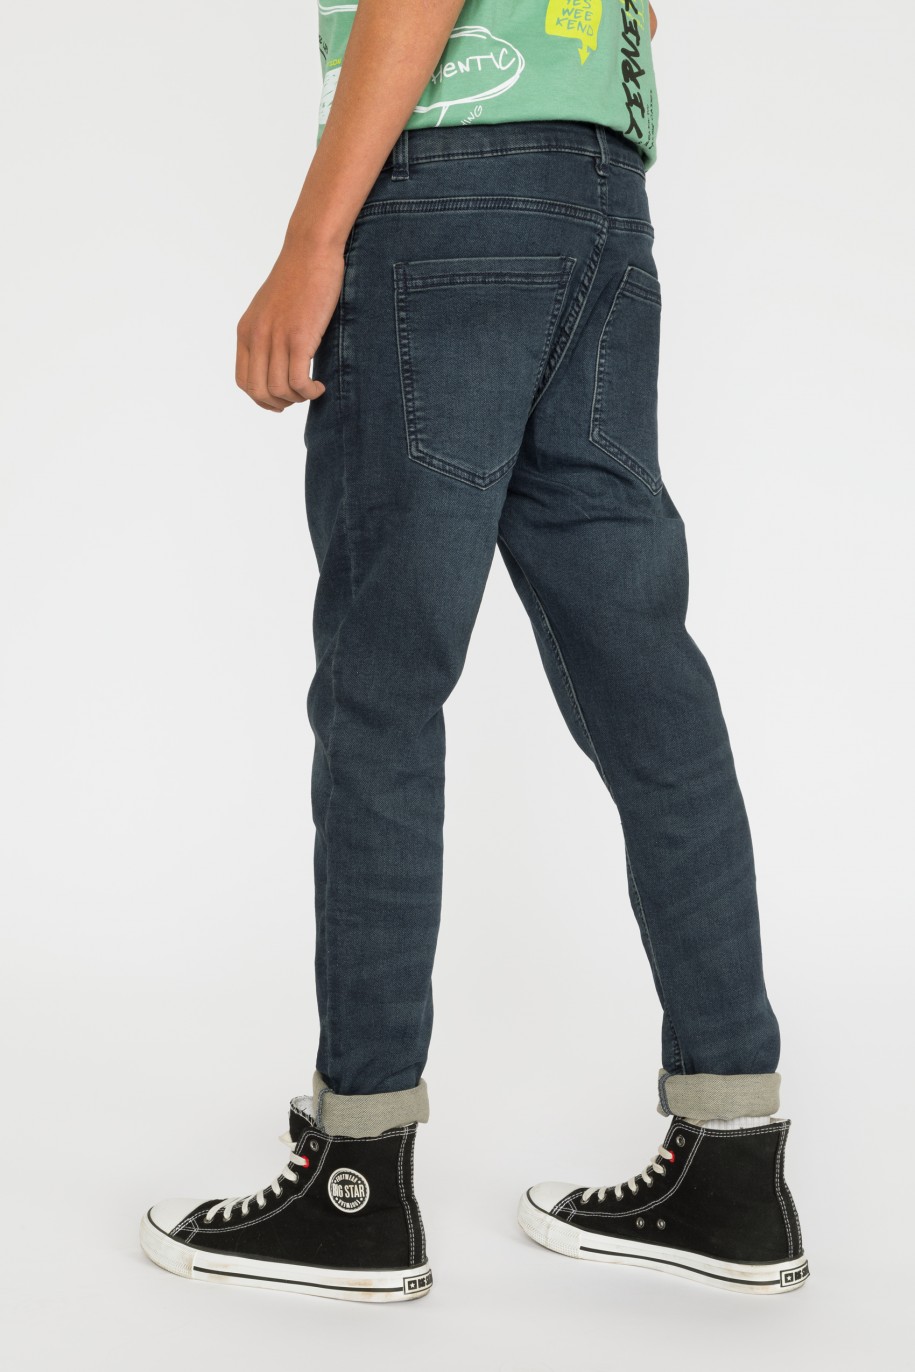 Granatowe spodnie jeansowe dla chłopaka - 30299